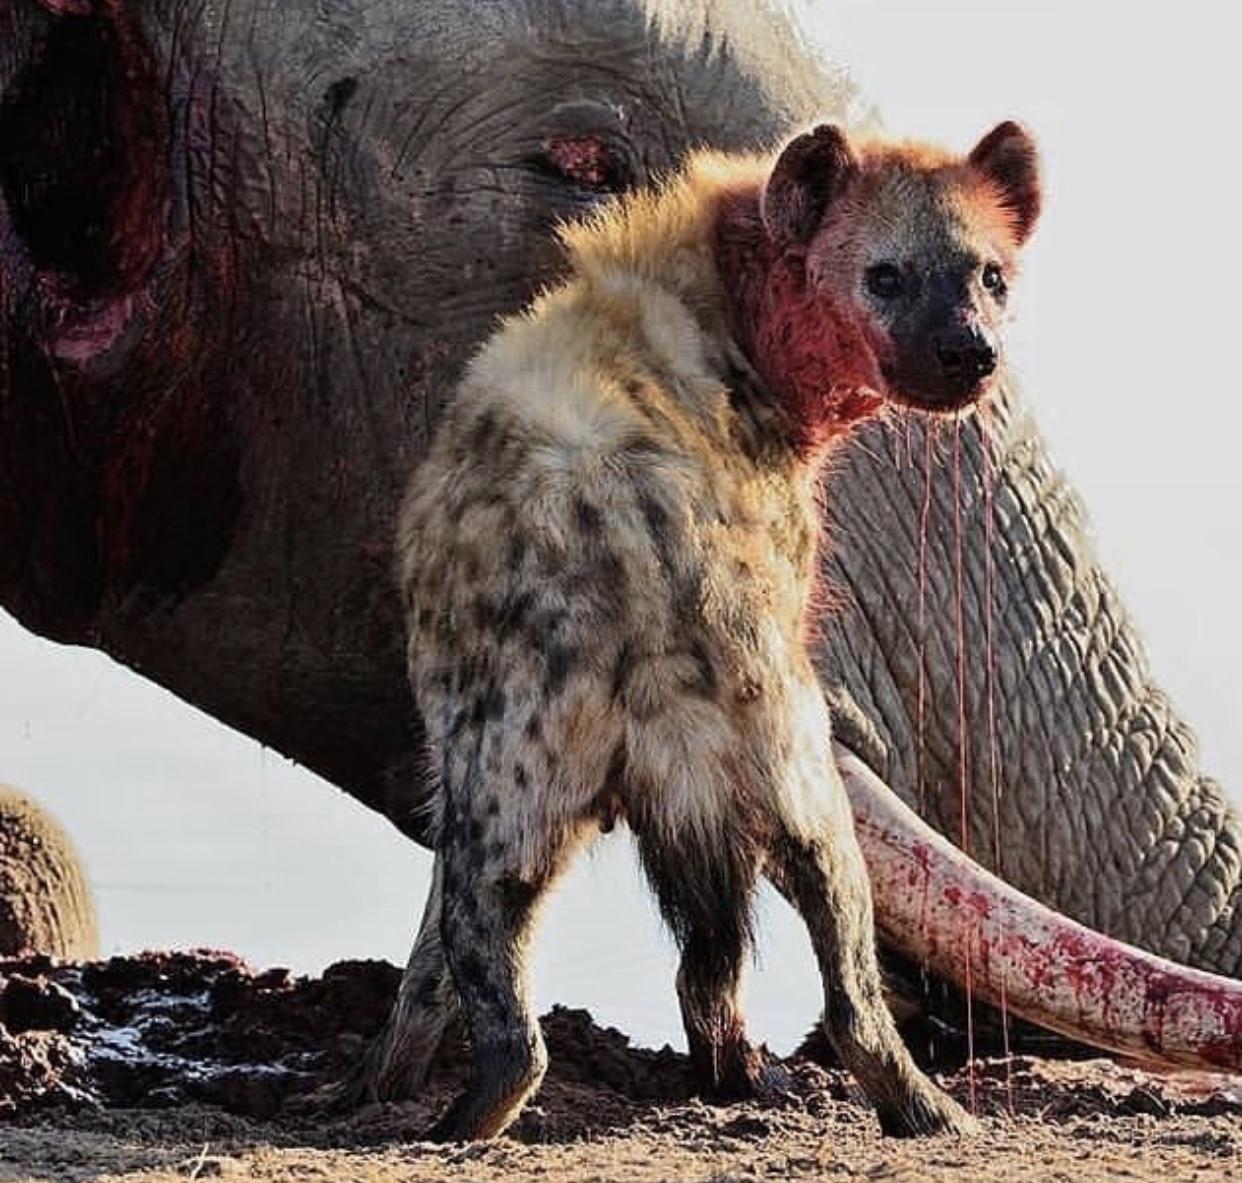 lɑ vaƖiente madre elefante fue muy atacada por hienas mιentras Ɩuchaba para ρroteger a sᴜ enorme elefante bebé